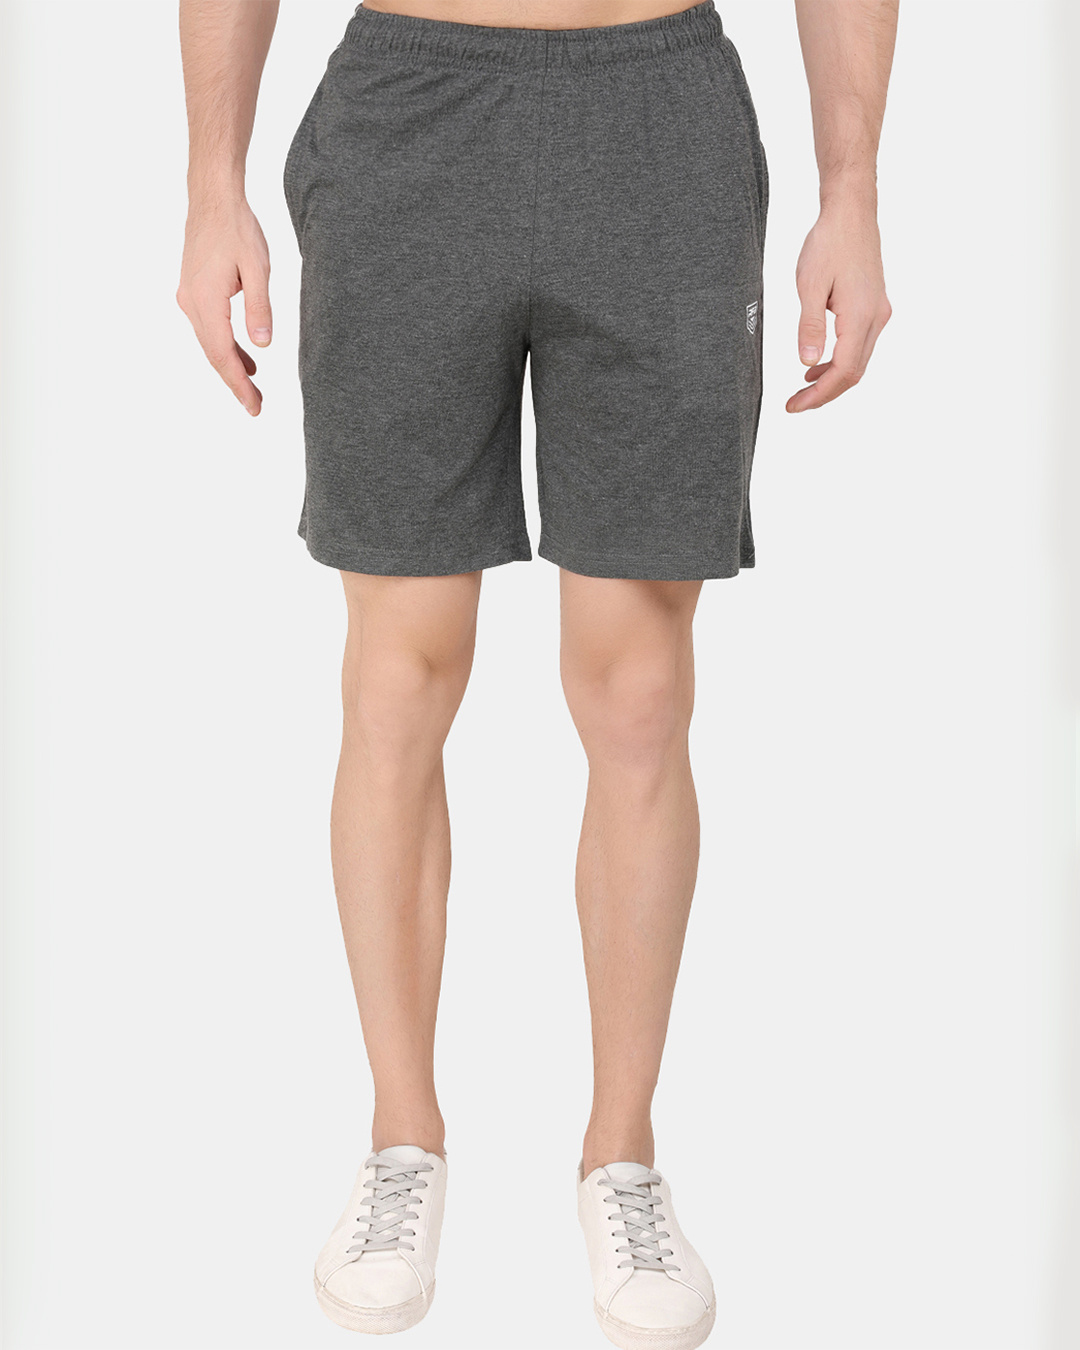 Buy Men's Grey Shorts for Men Grey Online at Bewakoof